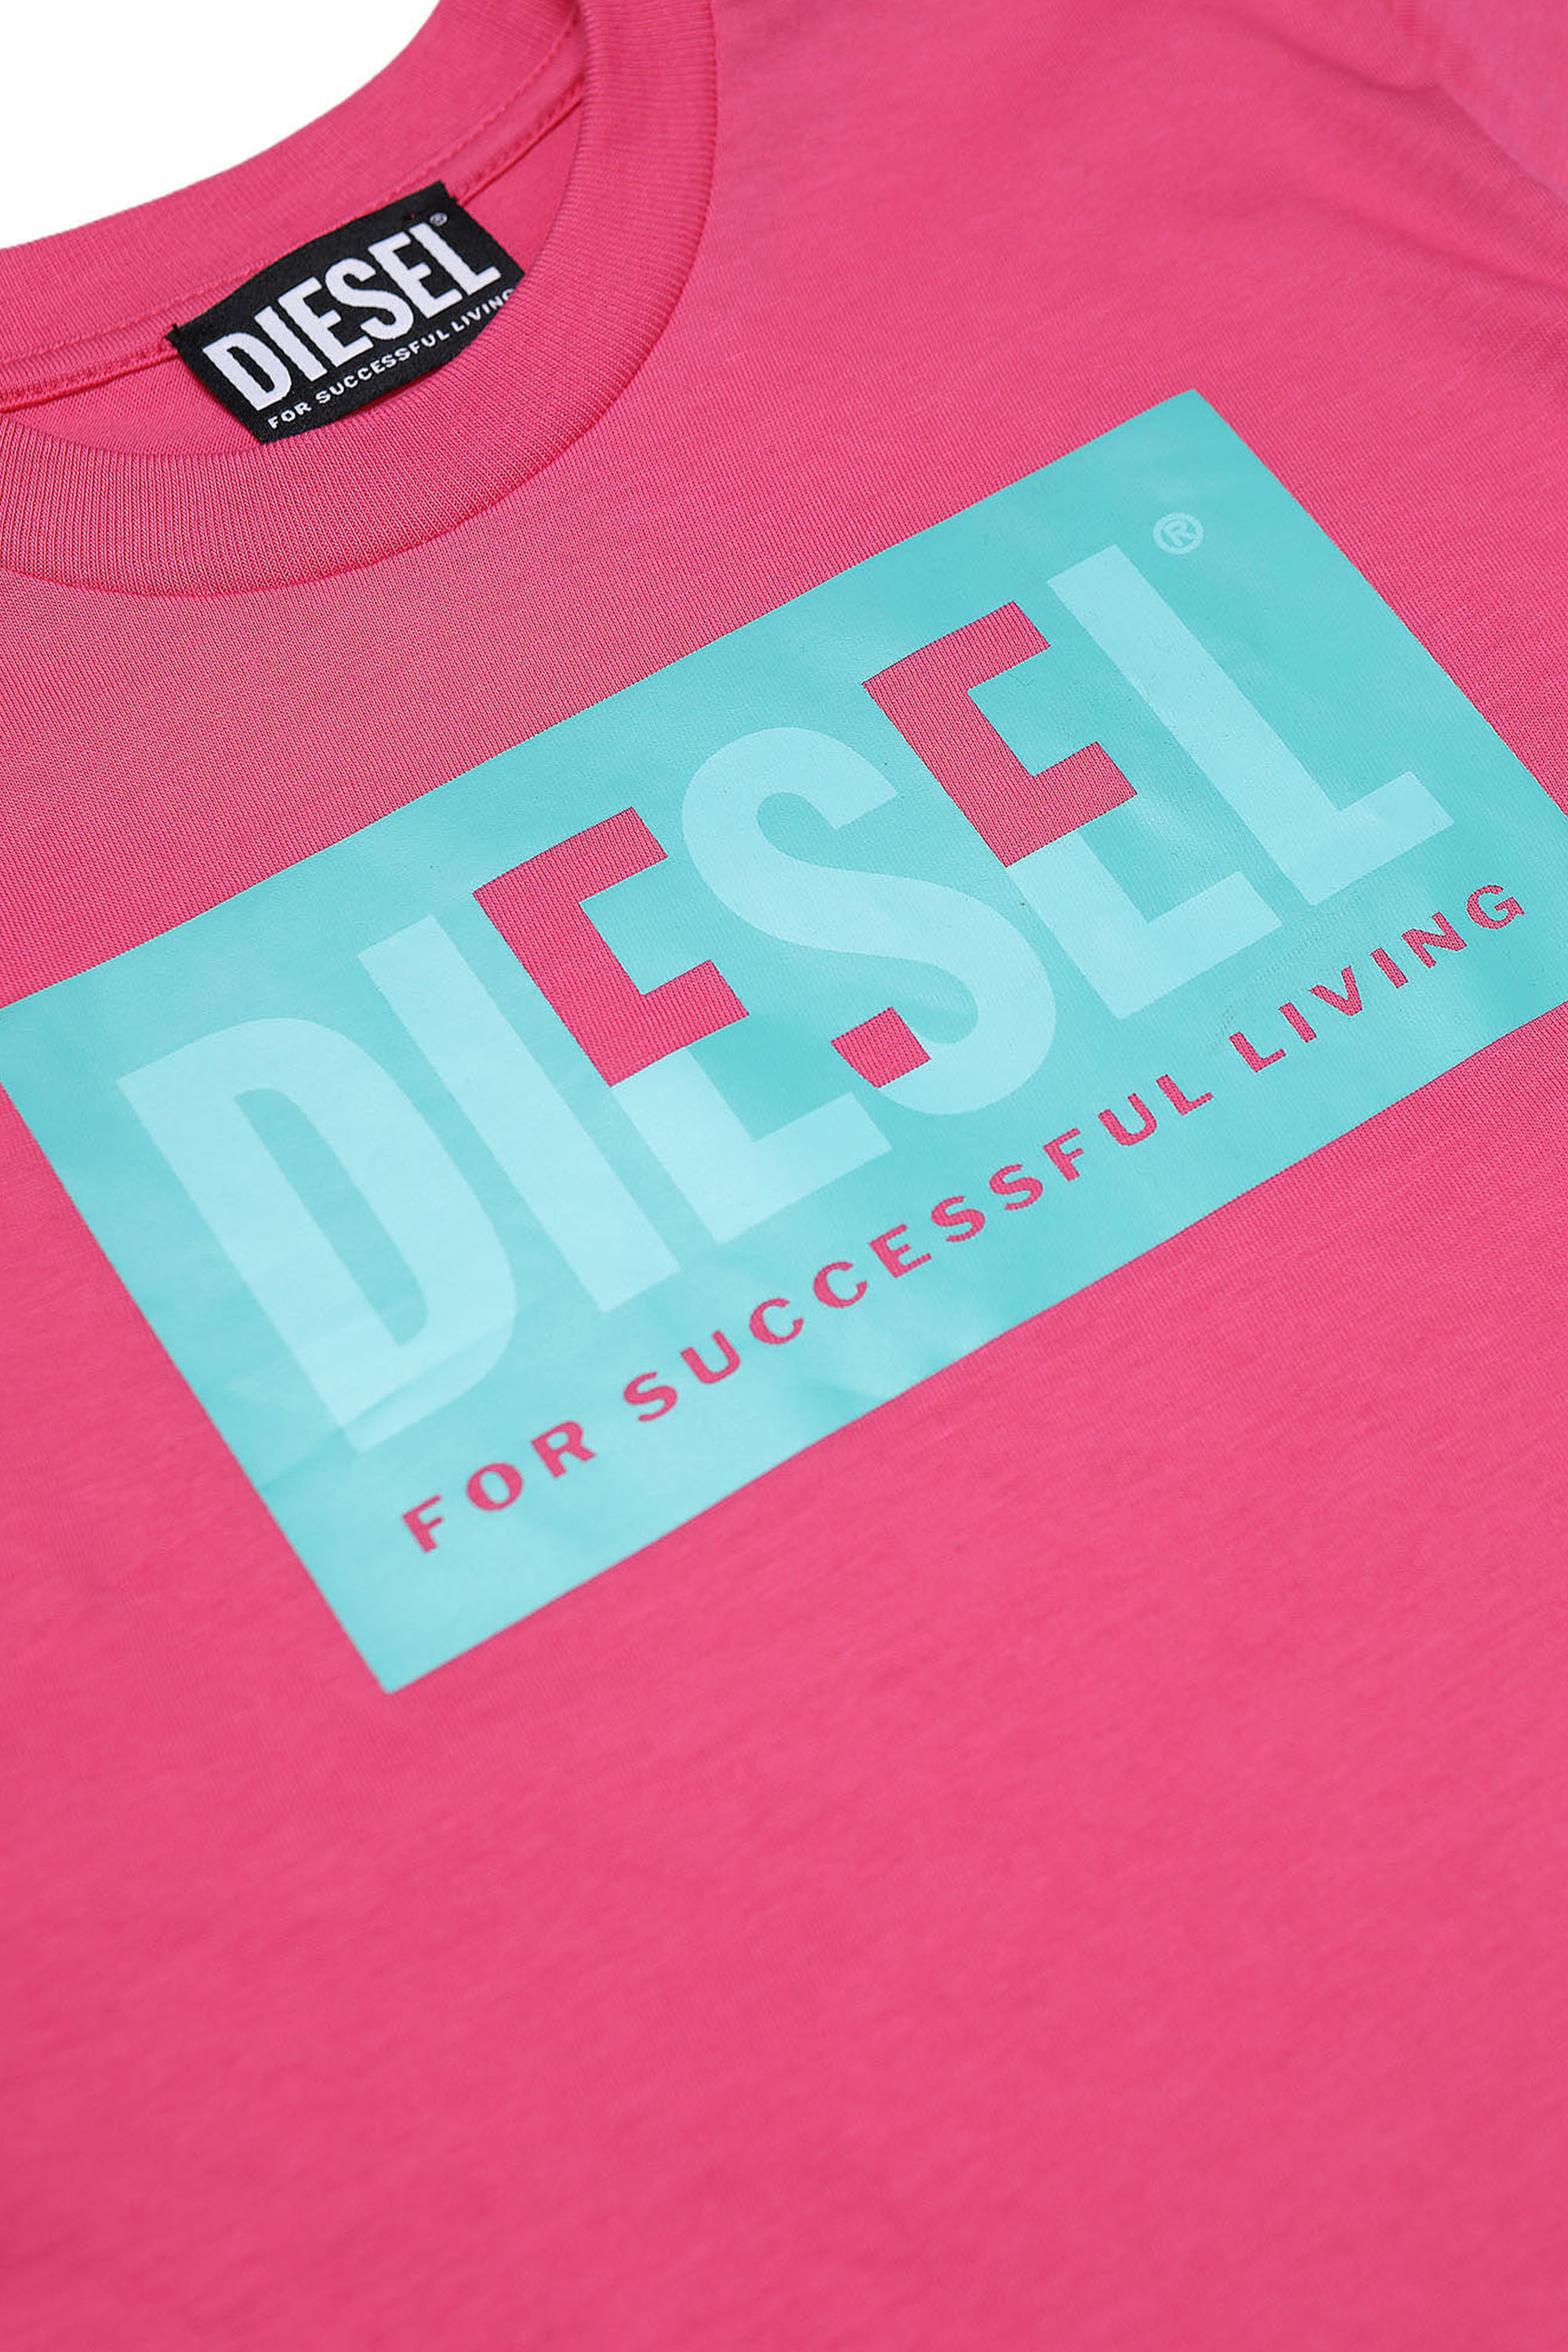 Diesel - TMILEY, Pink - Image 3